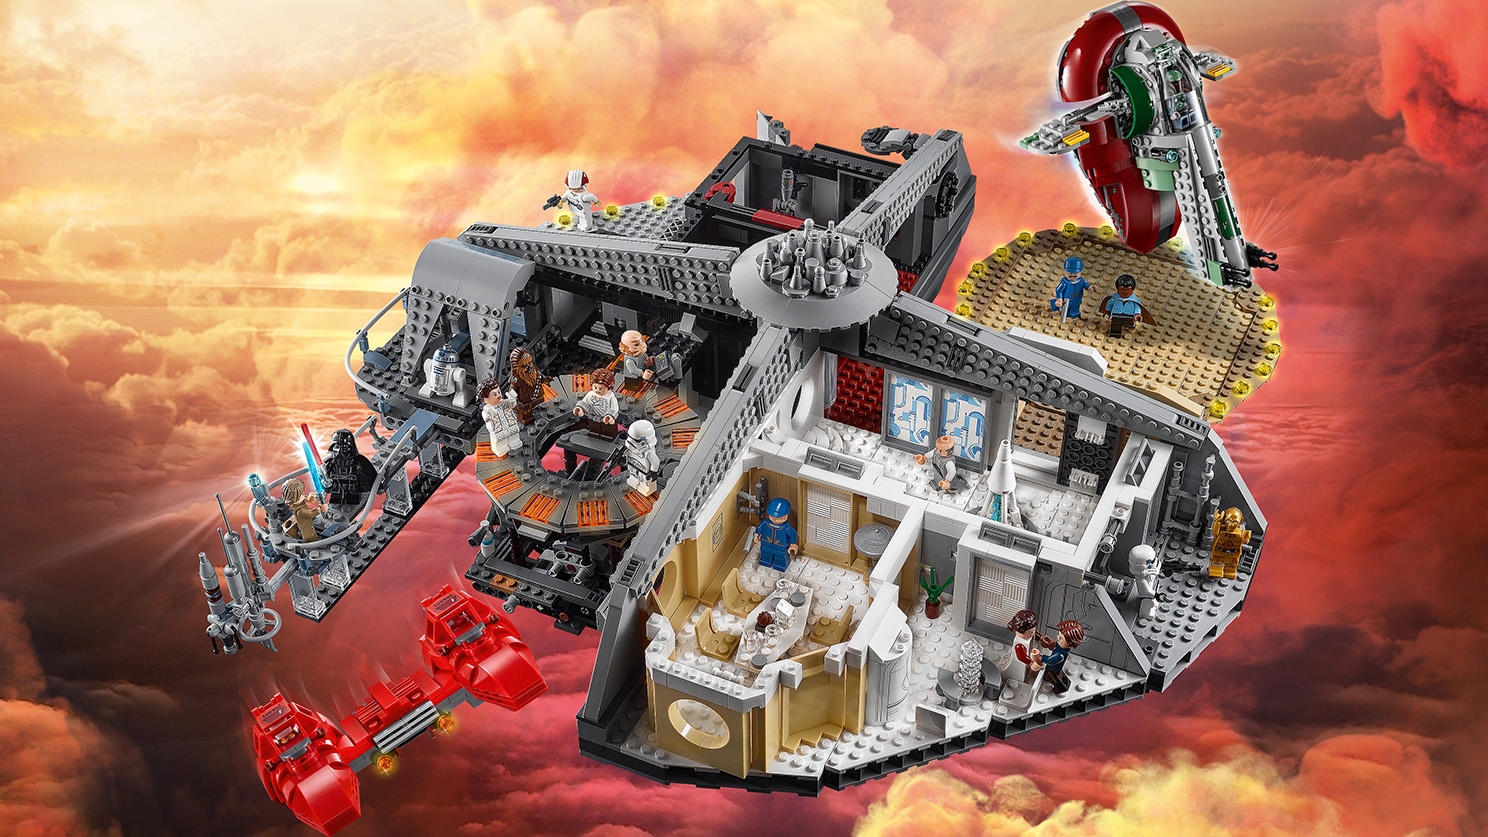 Mellemøsten Dom Joke Betrayal at Cloud City™ 75222 - LEGO® Star Wars™ Sets - LEGO.com for kids